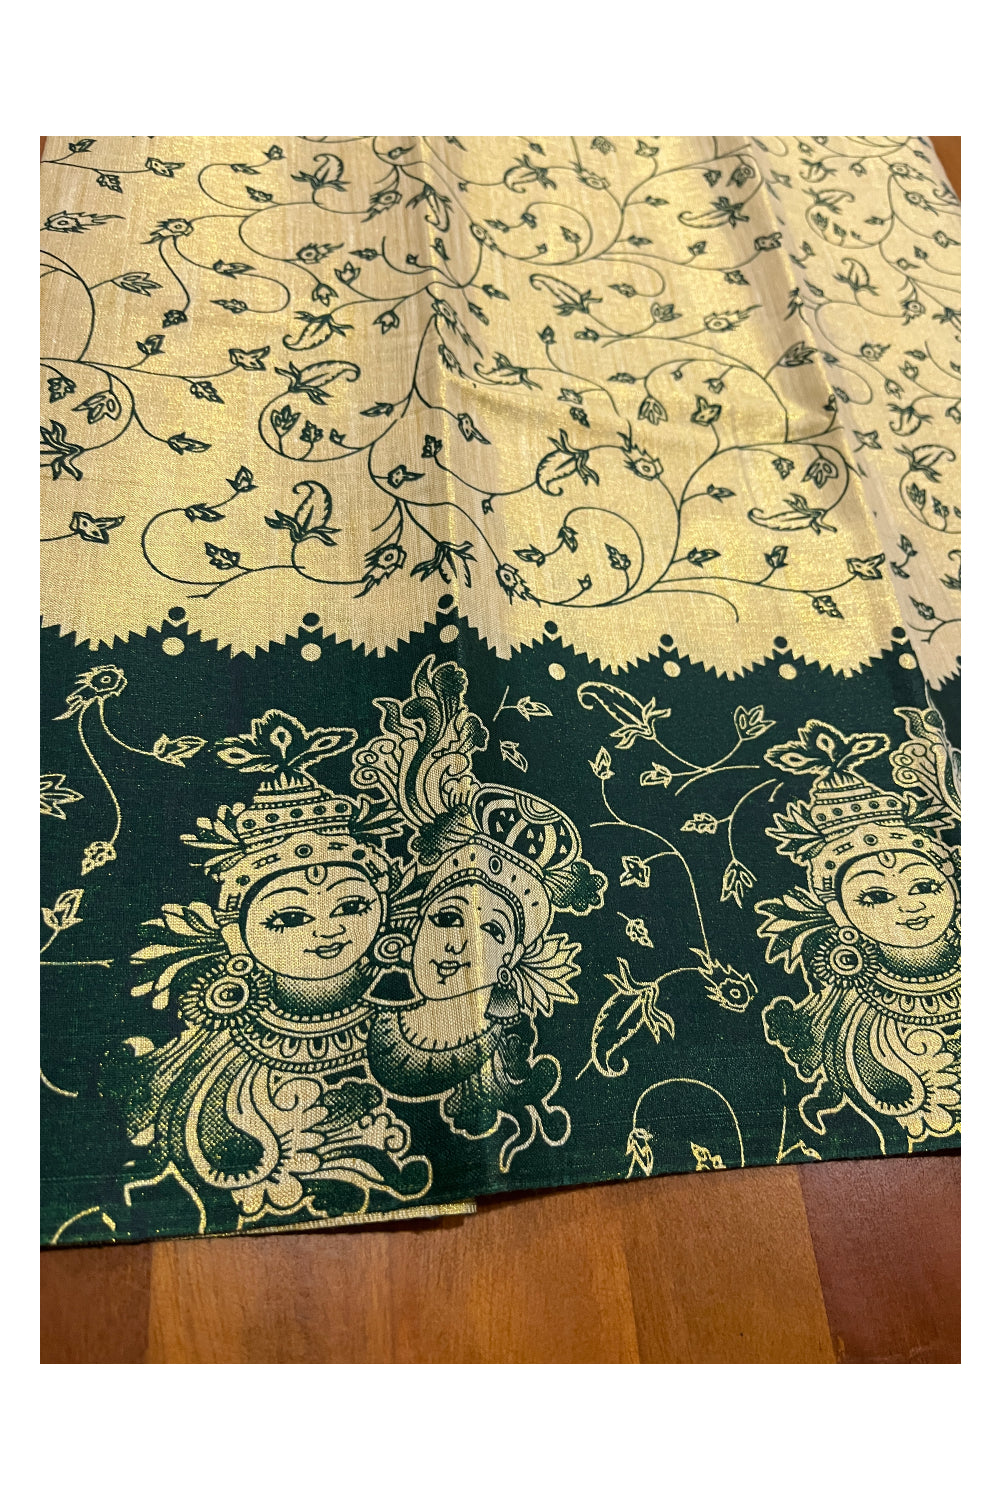 Kerala Tissue Block Printed Pavada and Green Designer Blouse Material for Kids 3 Meters